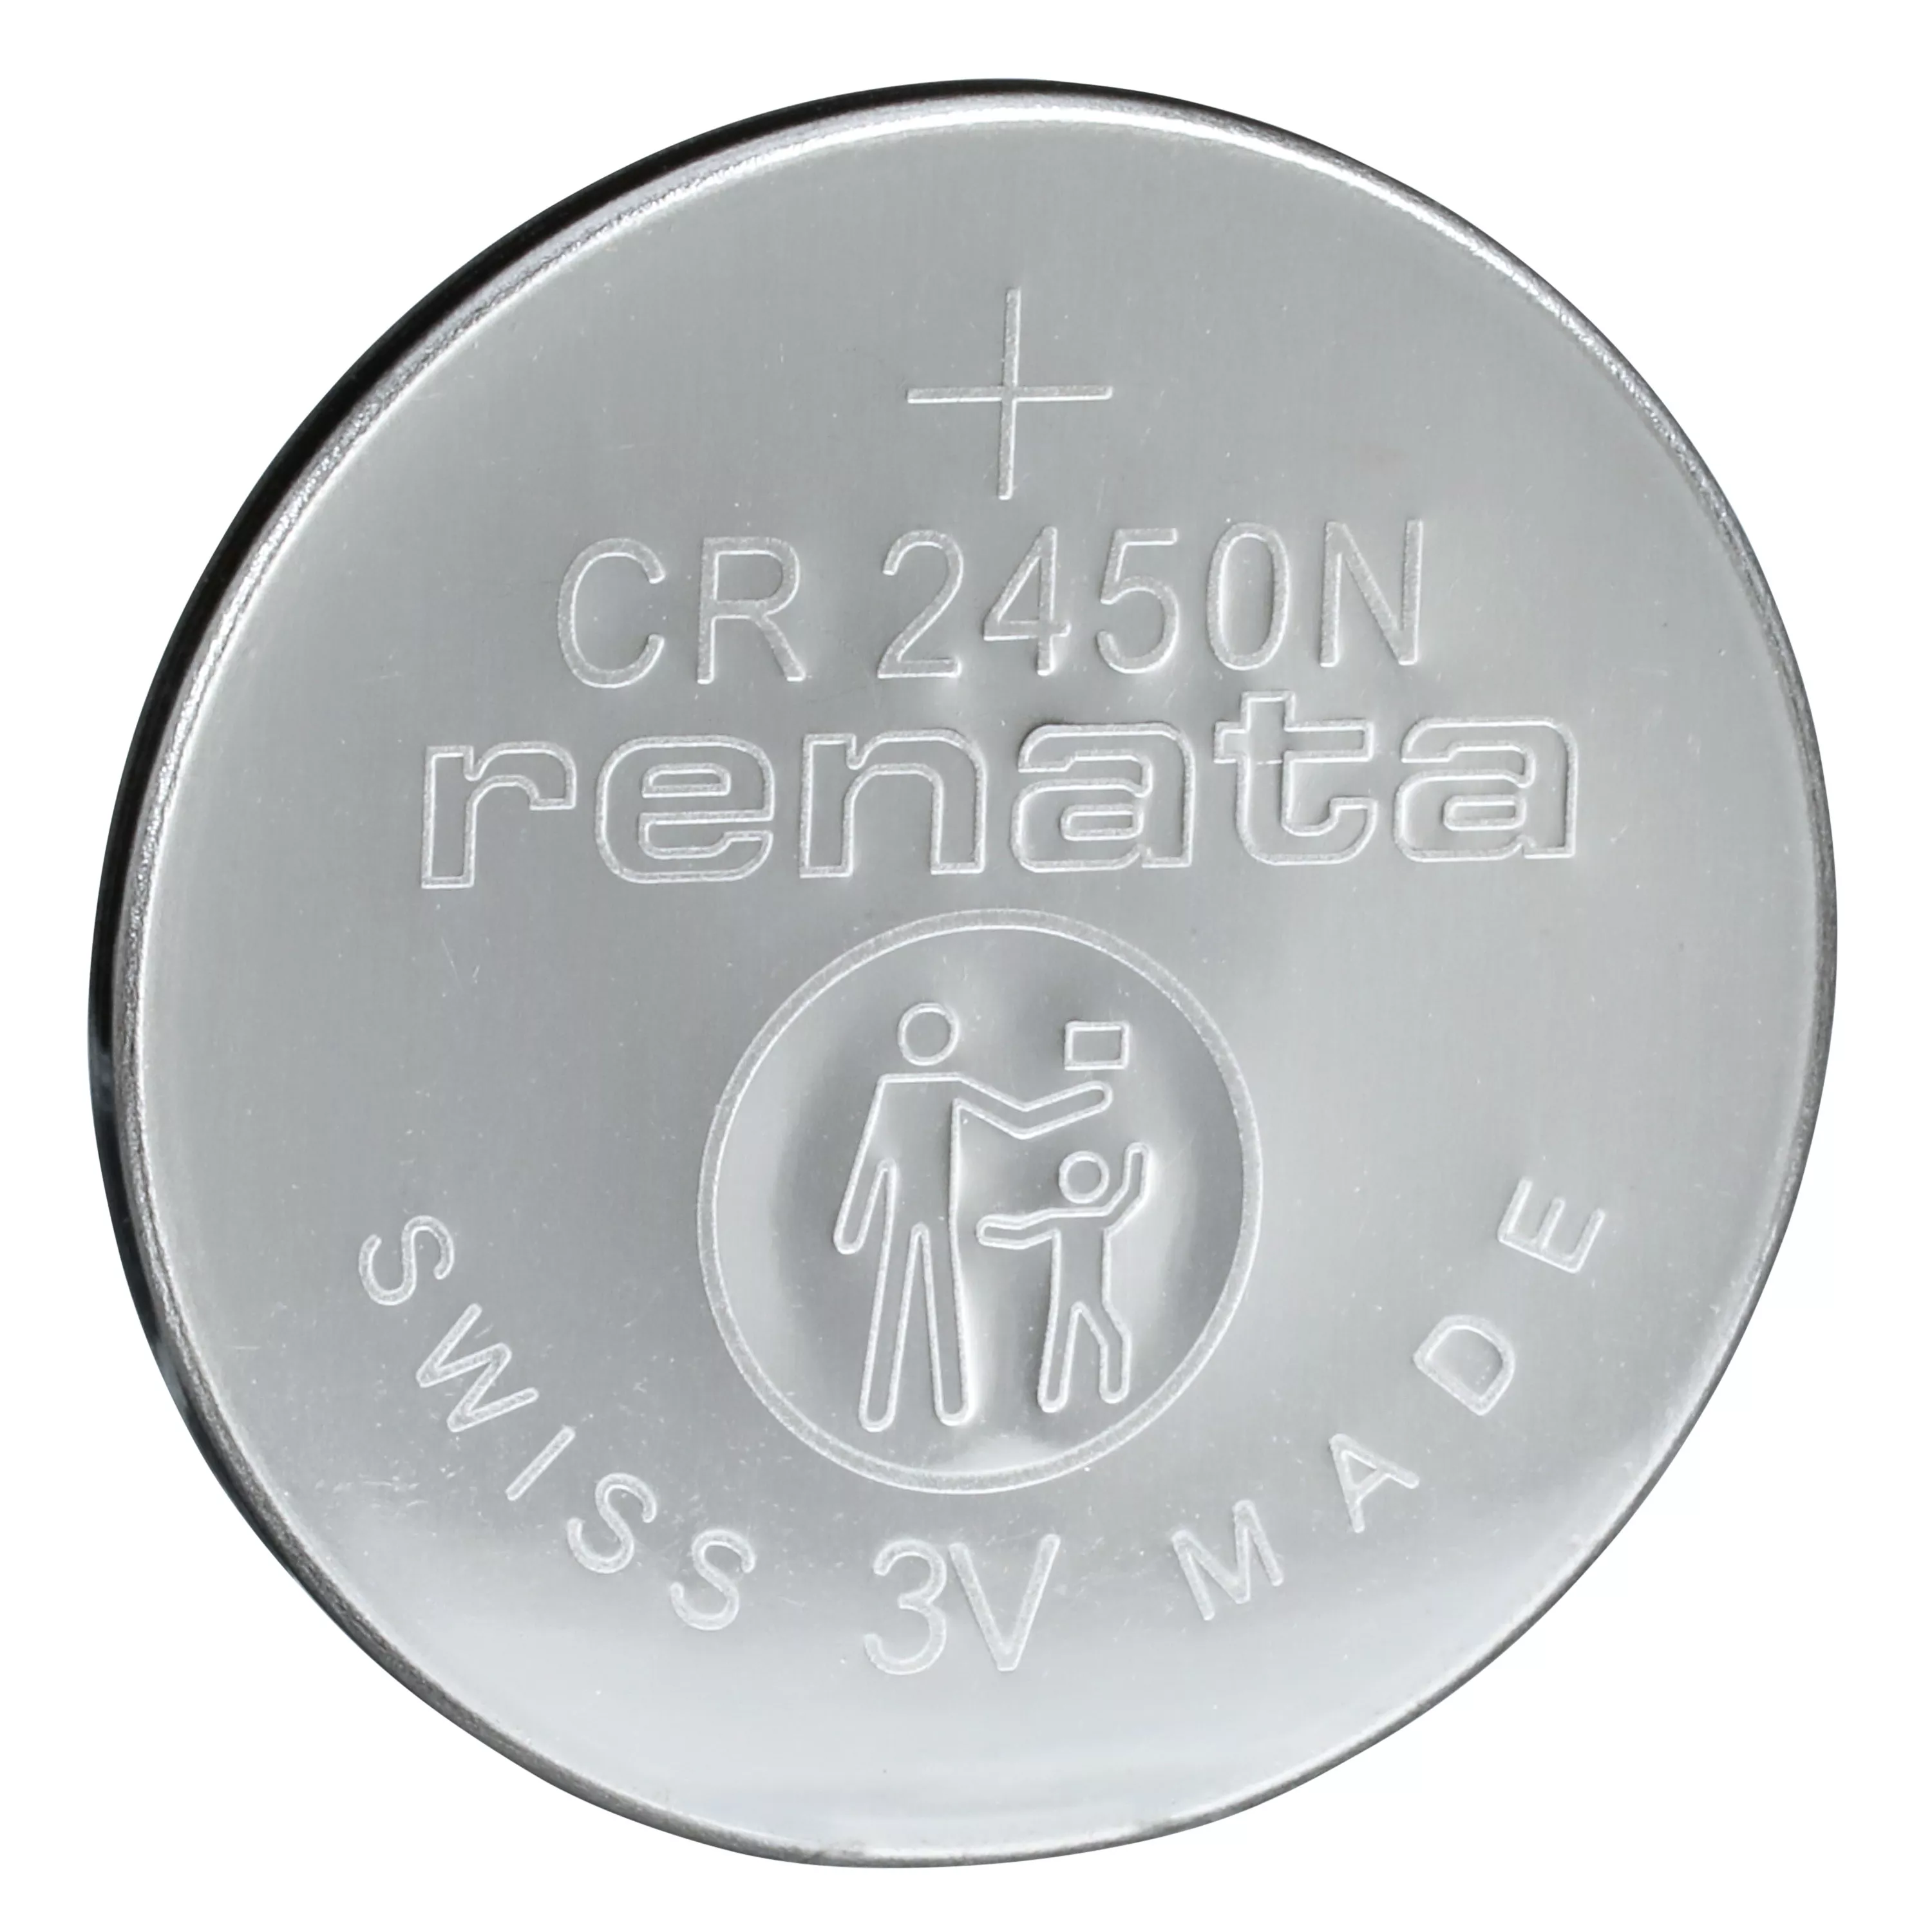 SKU 7100261325 | 3M™ Speedglas™ G5 Series Welding Filter Battery CR2450